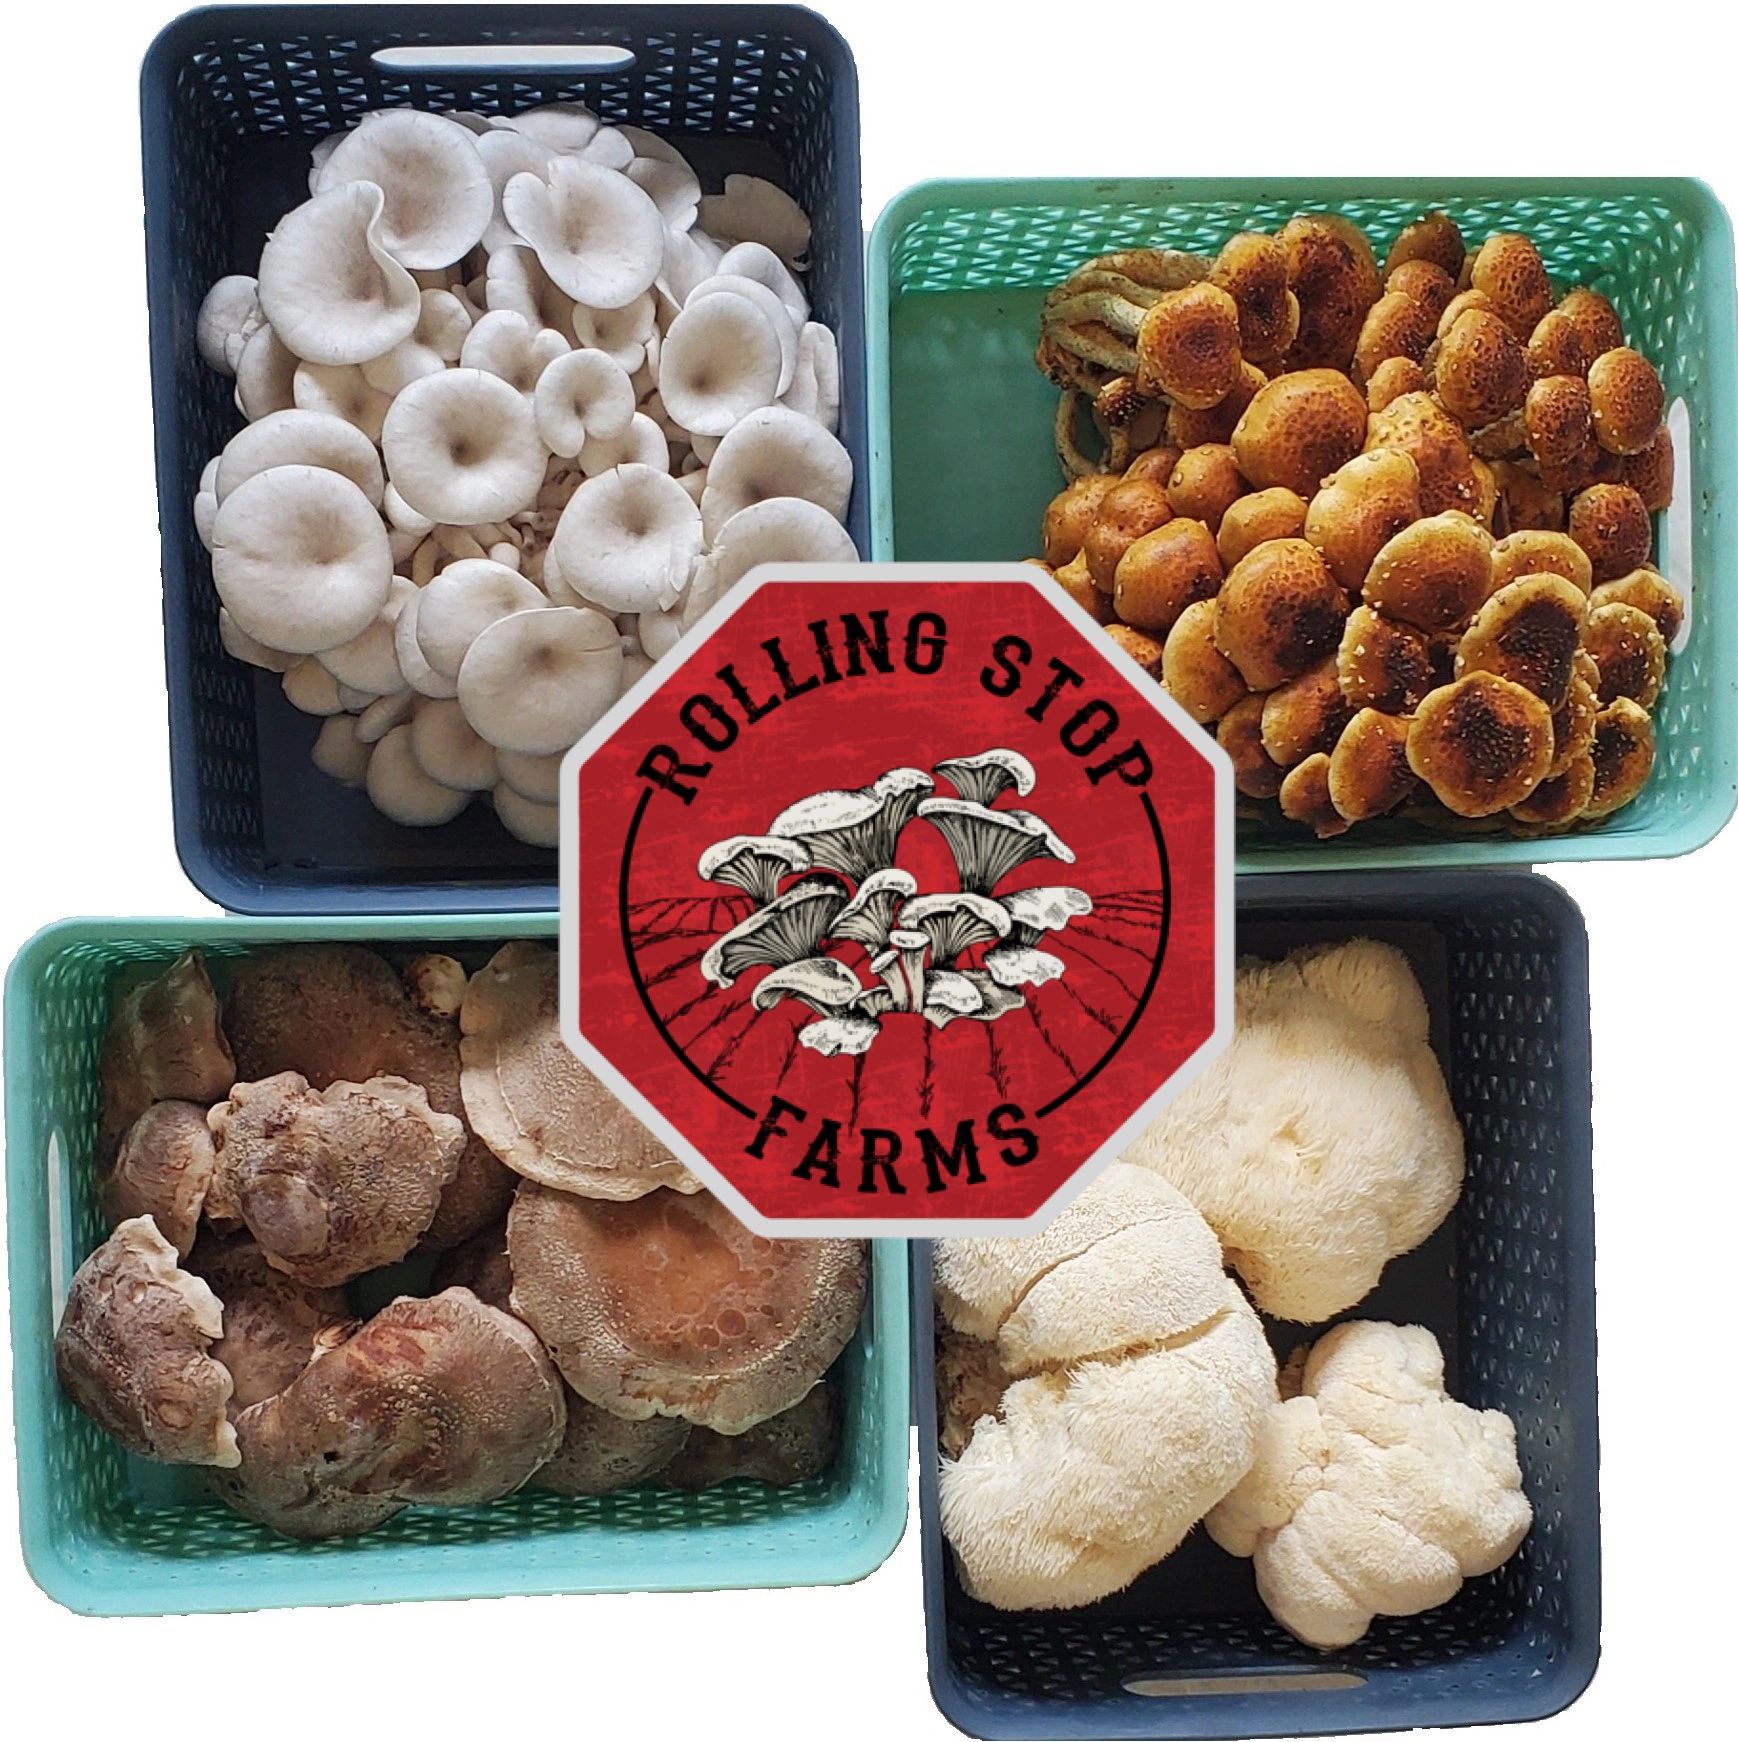 Shitake Mushrooms (1 lb)